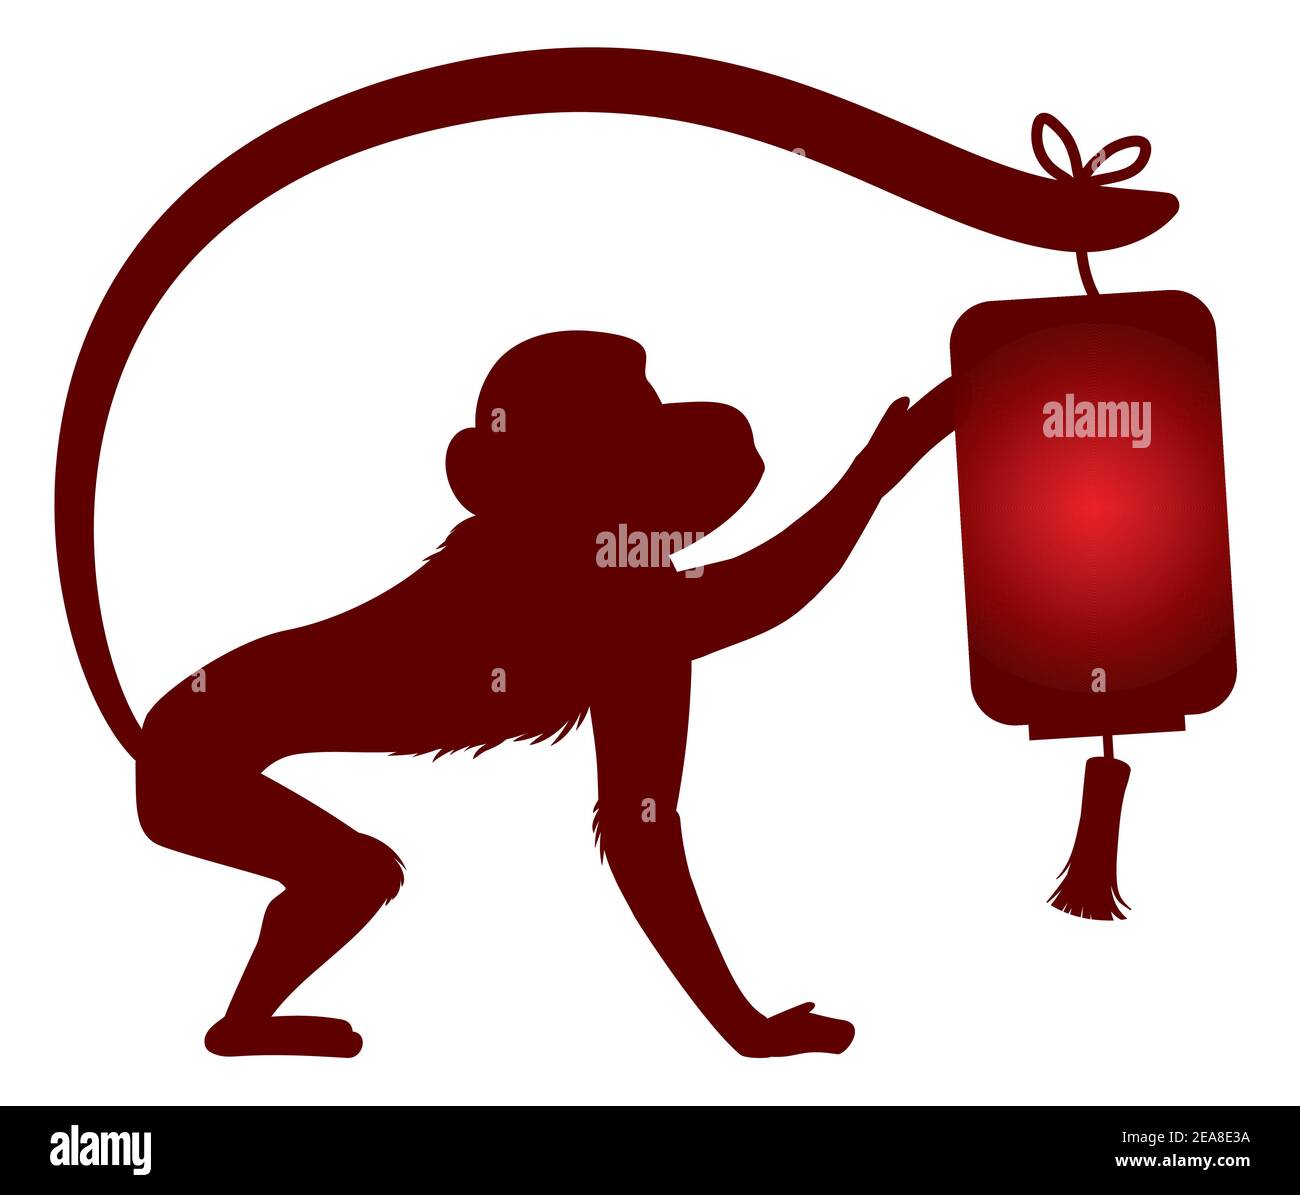 Motif isolé avec lanterne chinoise accrochée à la queue d'un singe dans le style silhouettes. Illustration de Vecteur